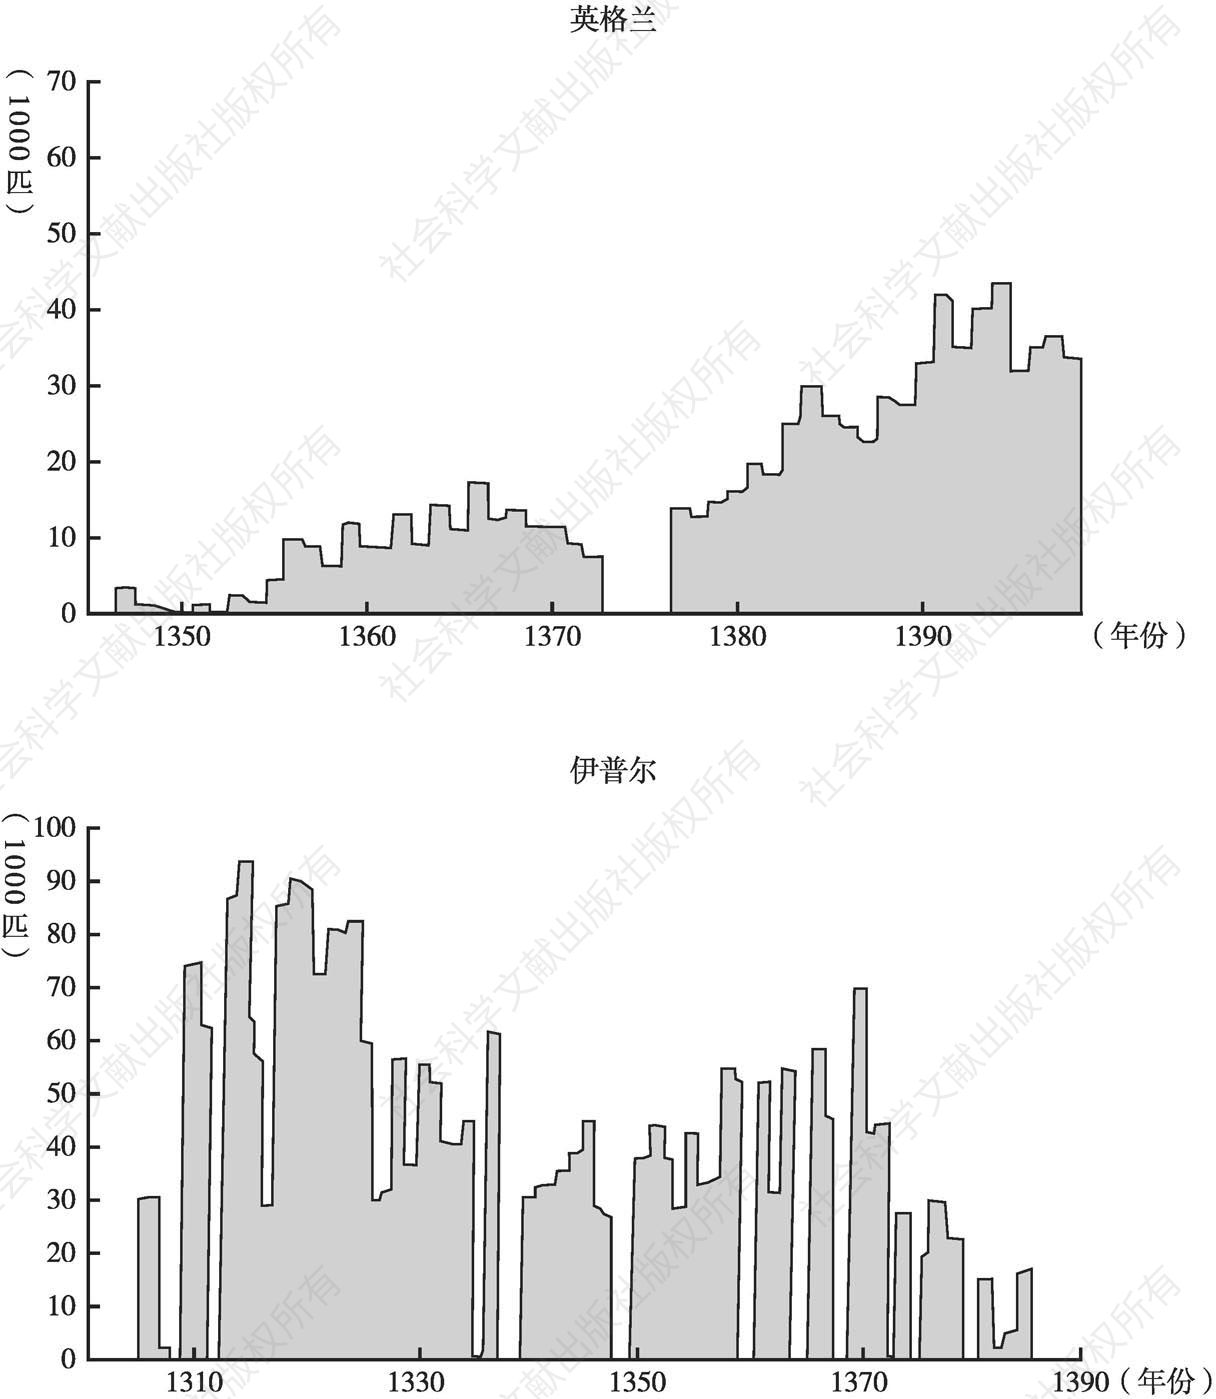 图3 布的贸易趋势：英格兰的输出量和伊普尔的生产量